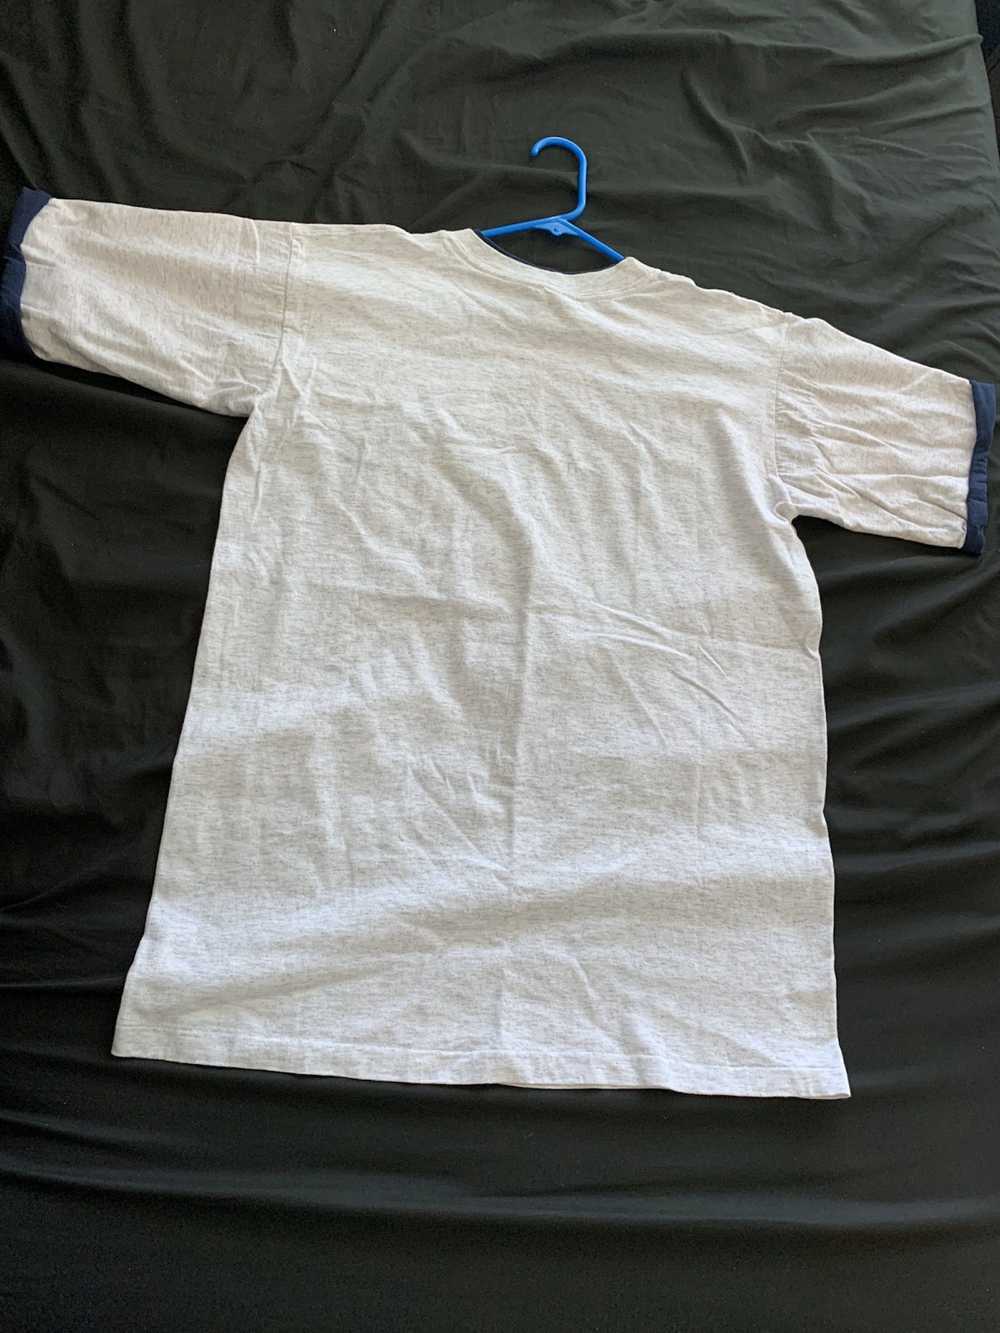 Underground Activewear Vintage Yankees Cotton White T-Shirt XL Y4